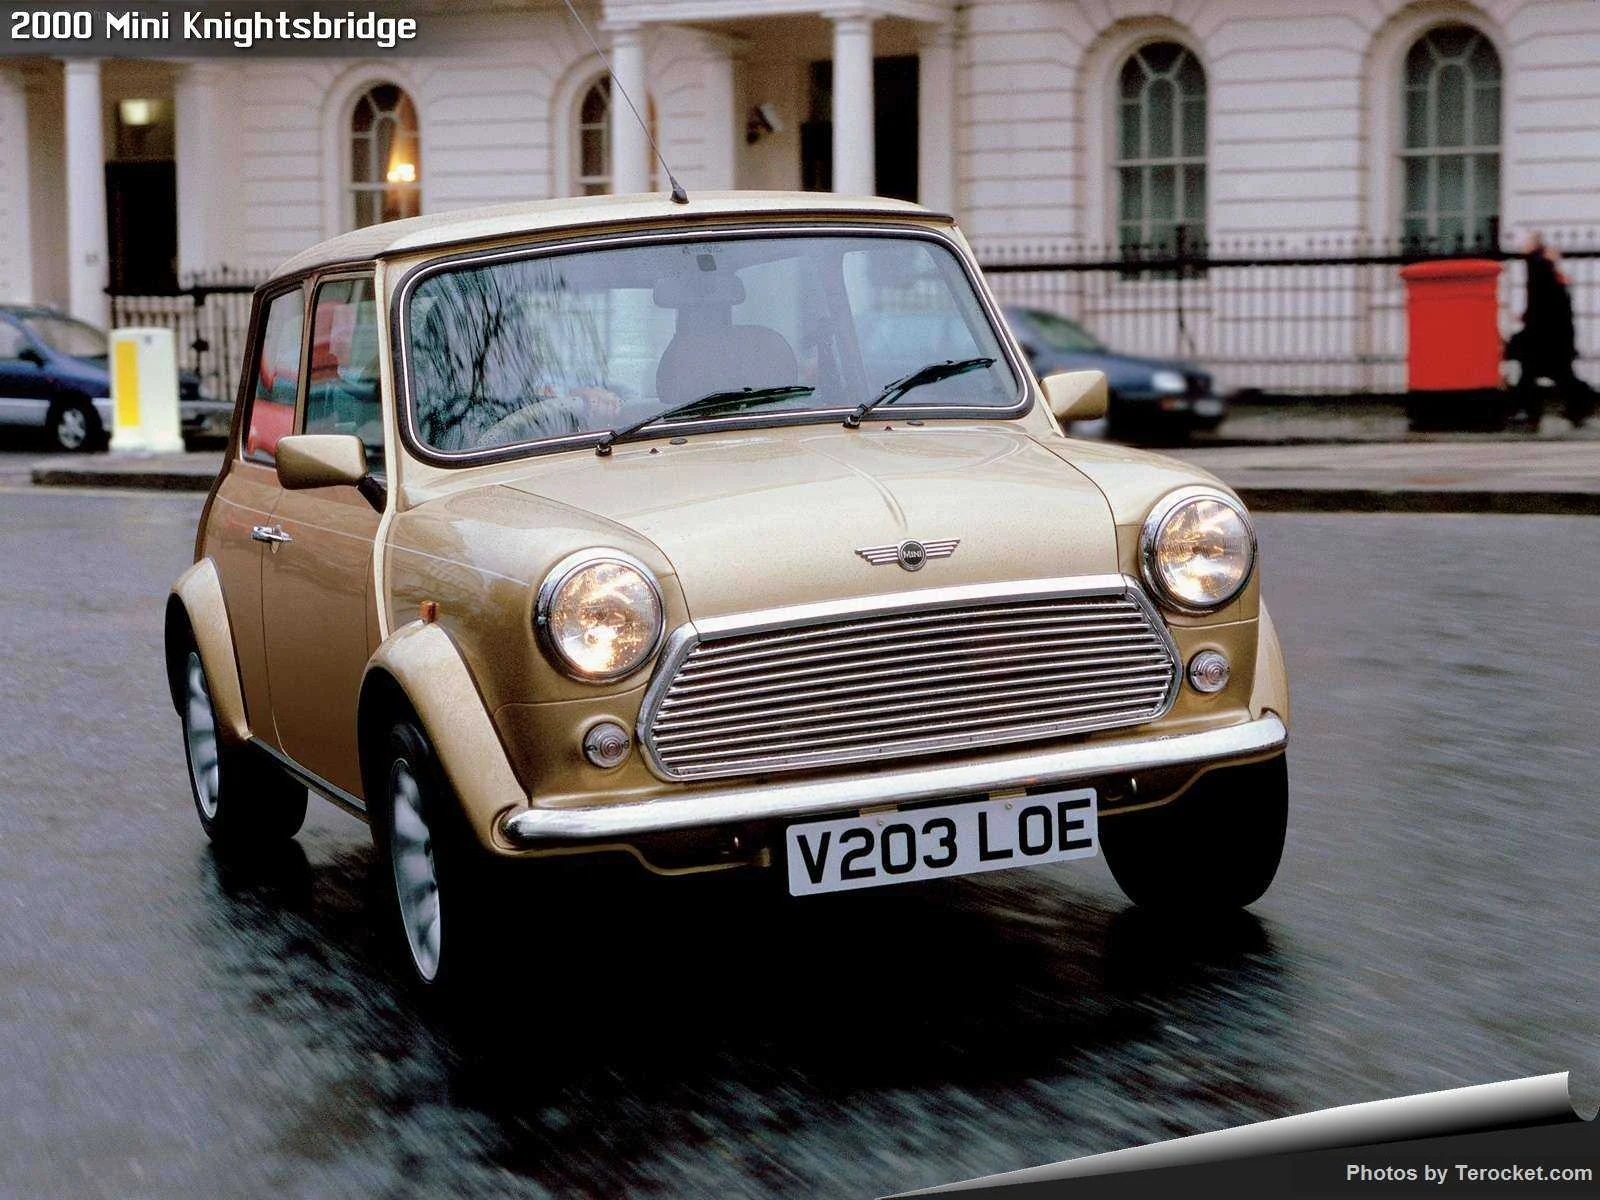 Hình ảnh xe ô tô Mini Knightsbridge 2000 & nội ngoại thất